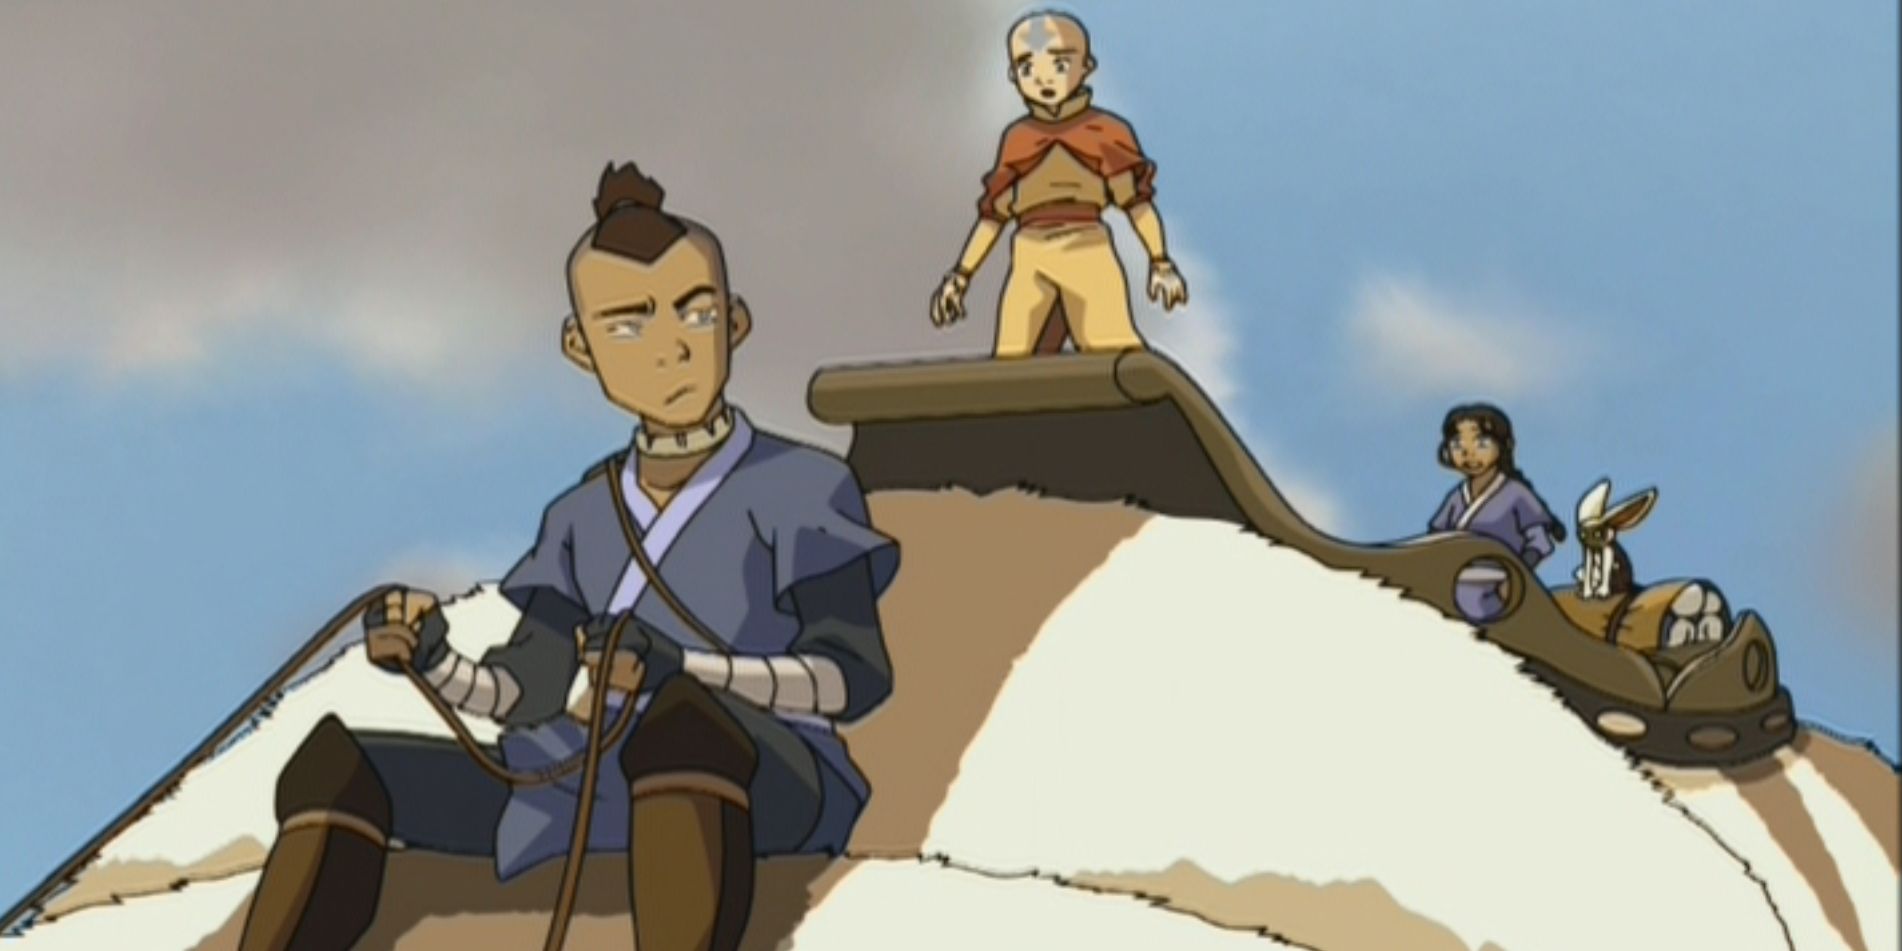 Aang Sokka and Katara riding Appa